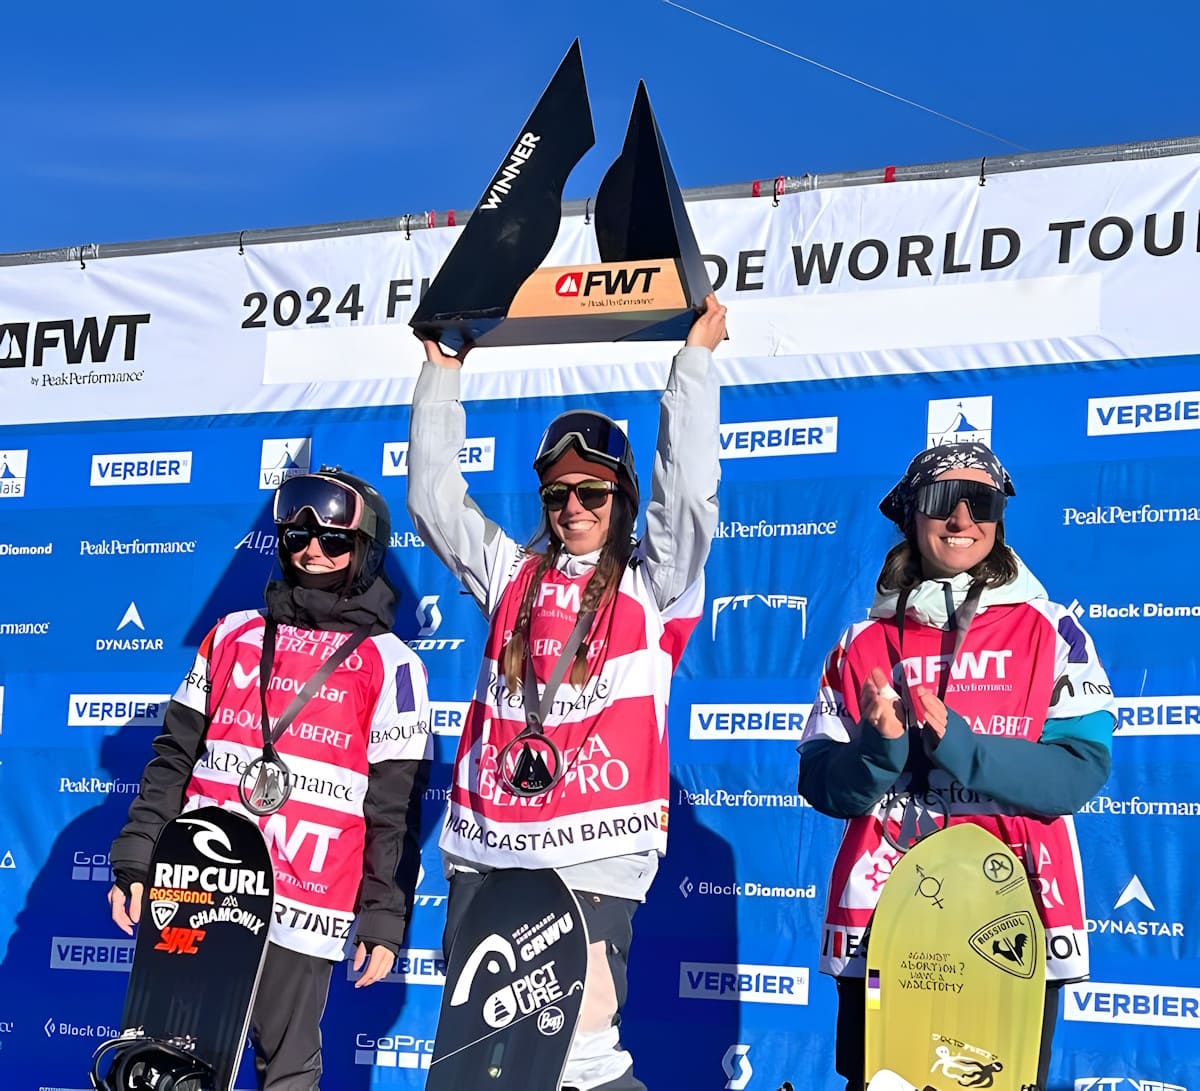 Núria Castán, brillante ganadora en snowboard del FWT Verbier. Crónica y resultados de de la competición